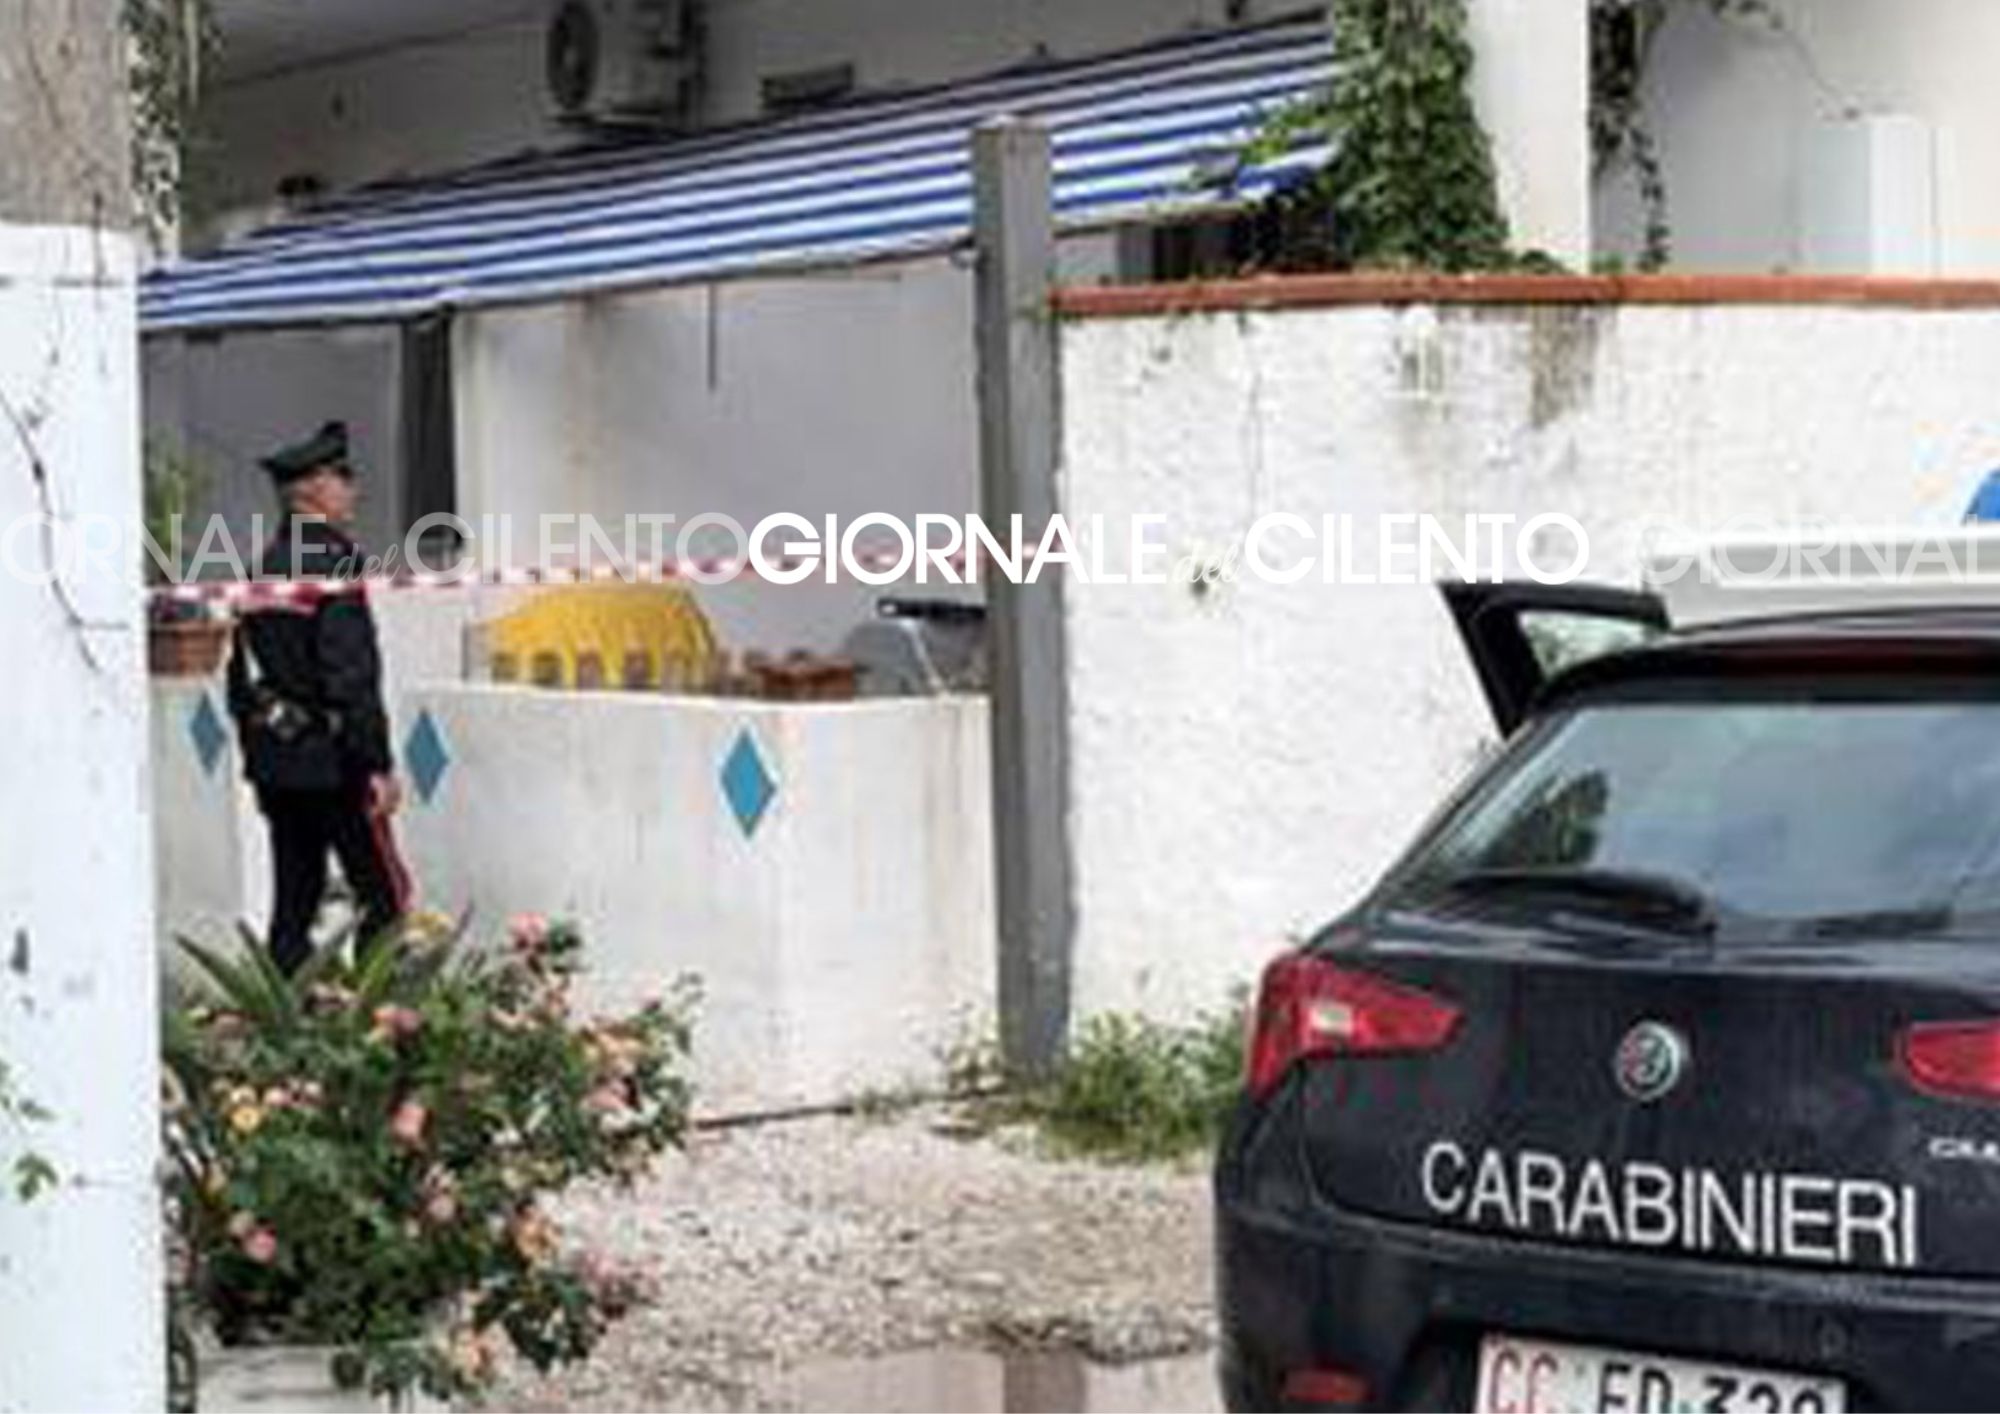 Cadavere di una donna trovato in un villaggio turistico a Paestum, autopsia per chiarire il giallo